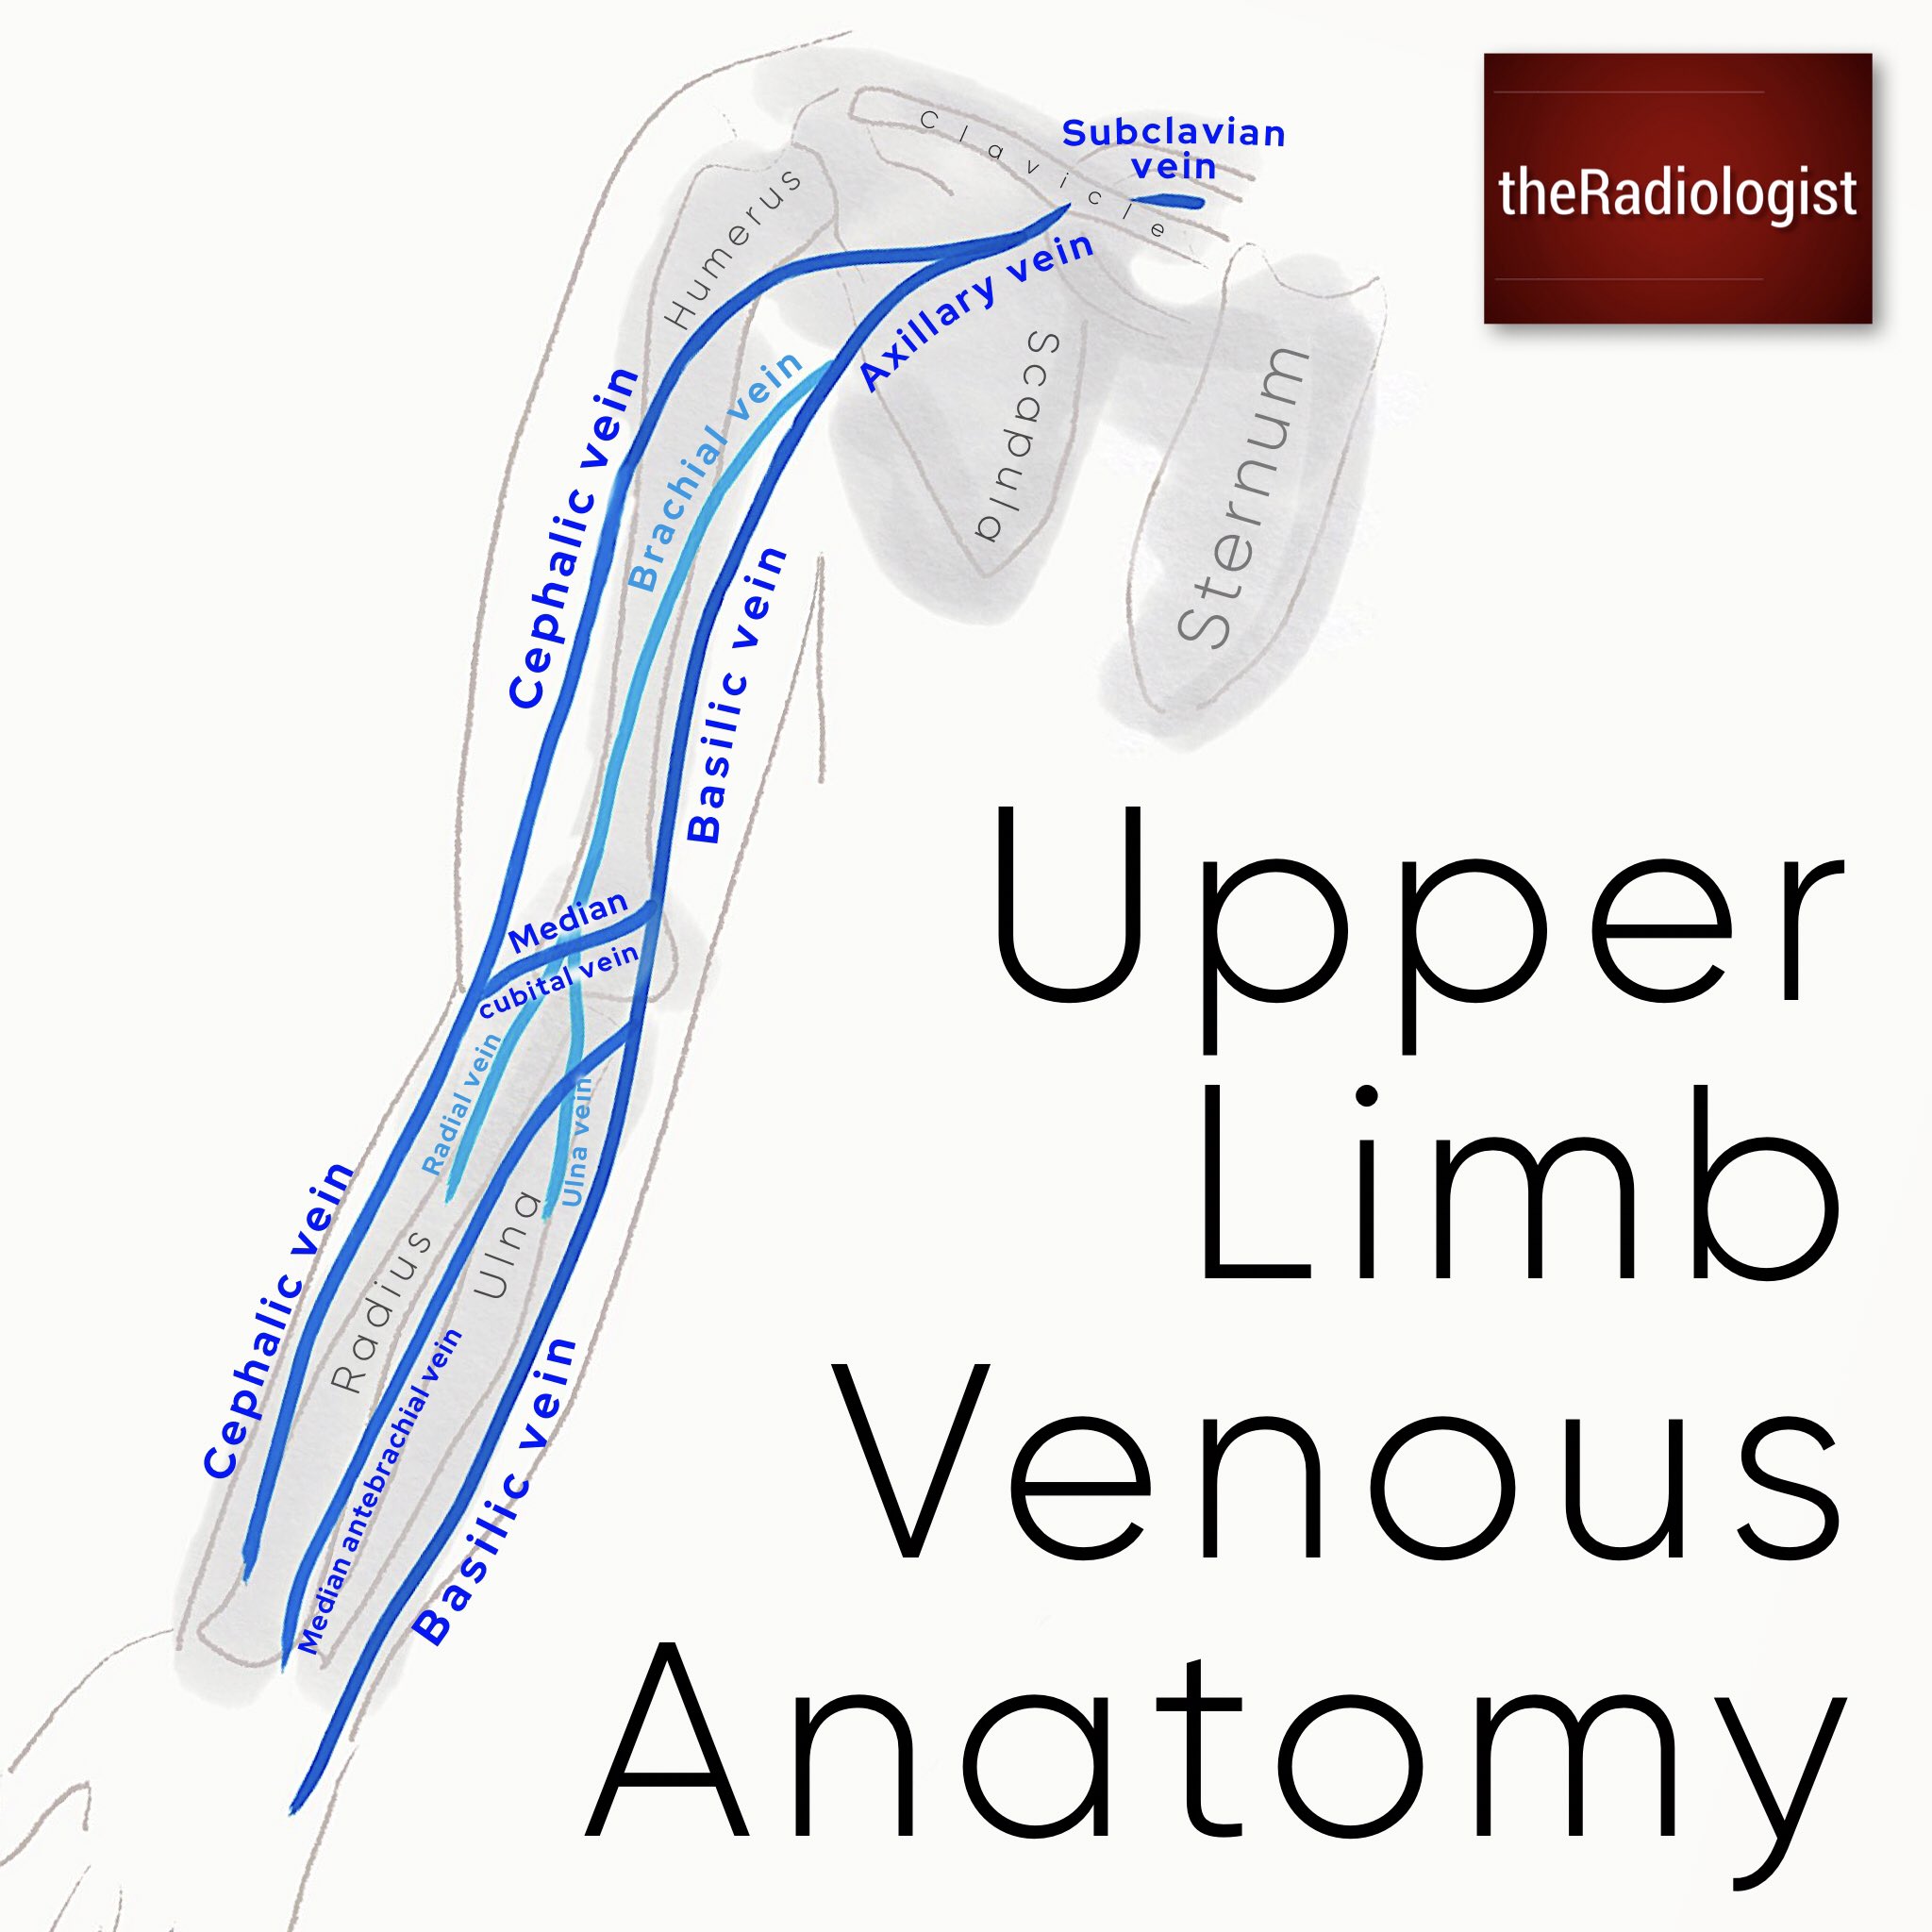 upper extremity vein anatomy